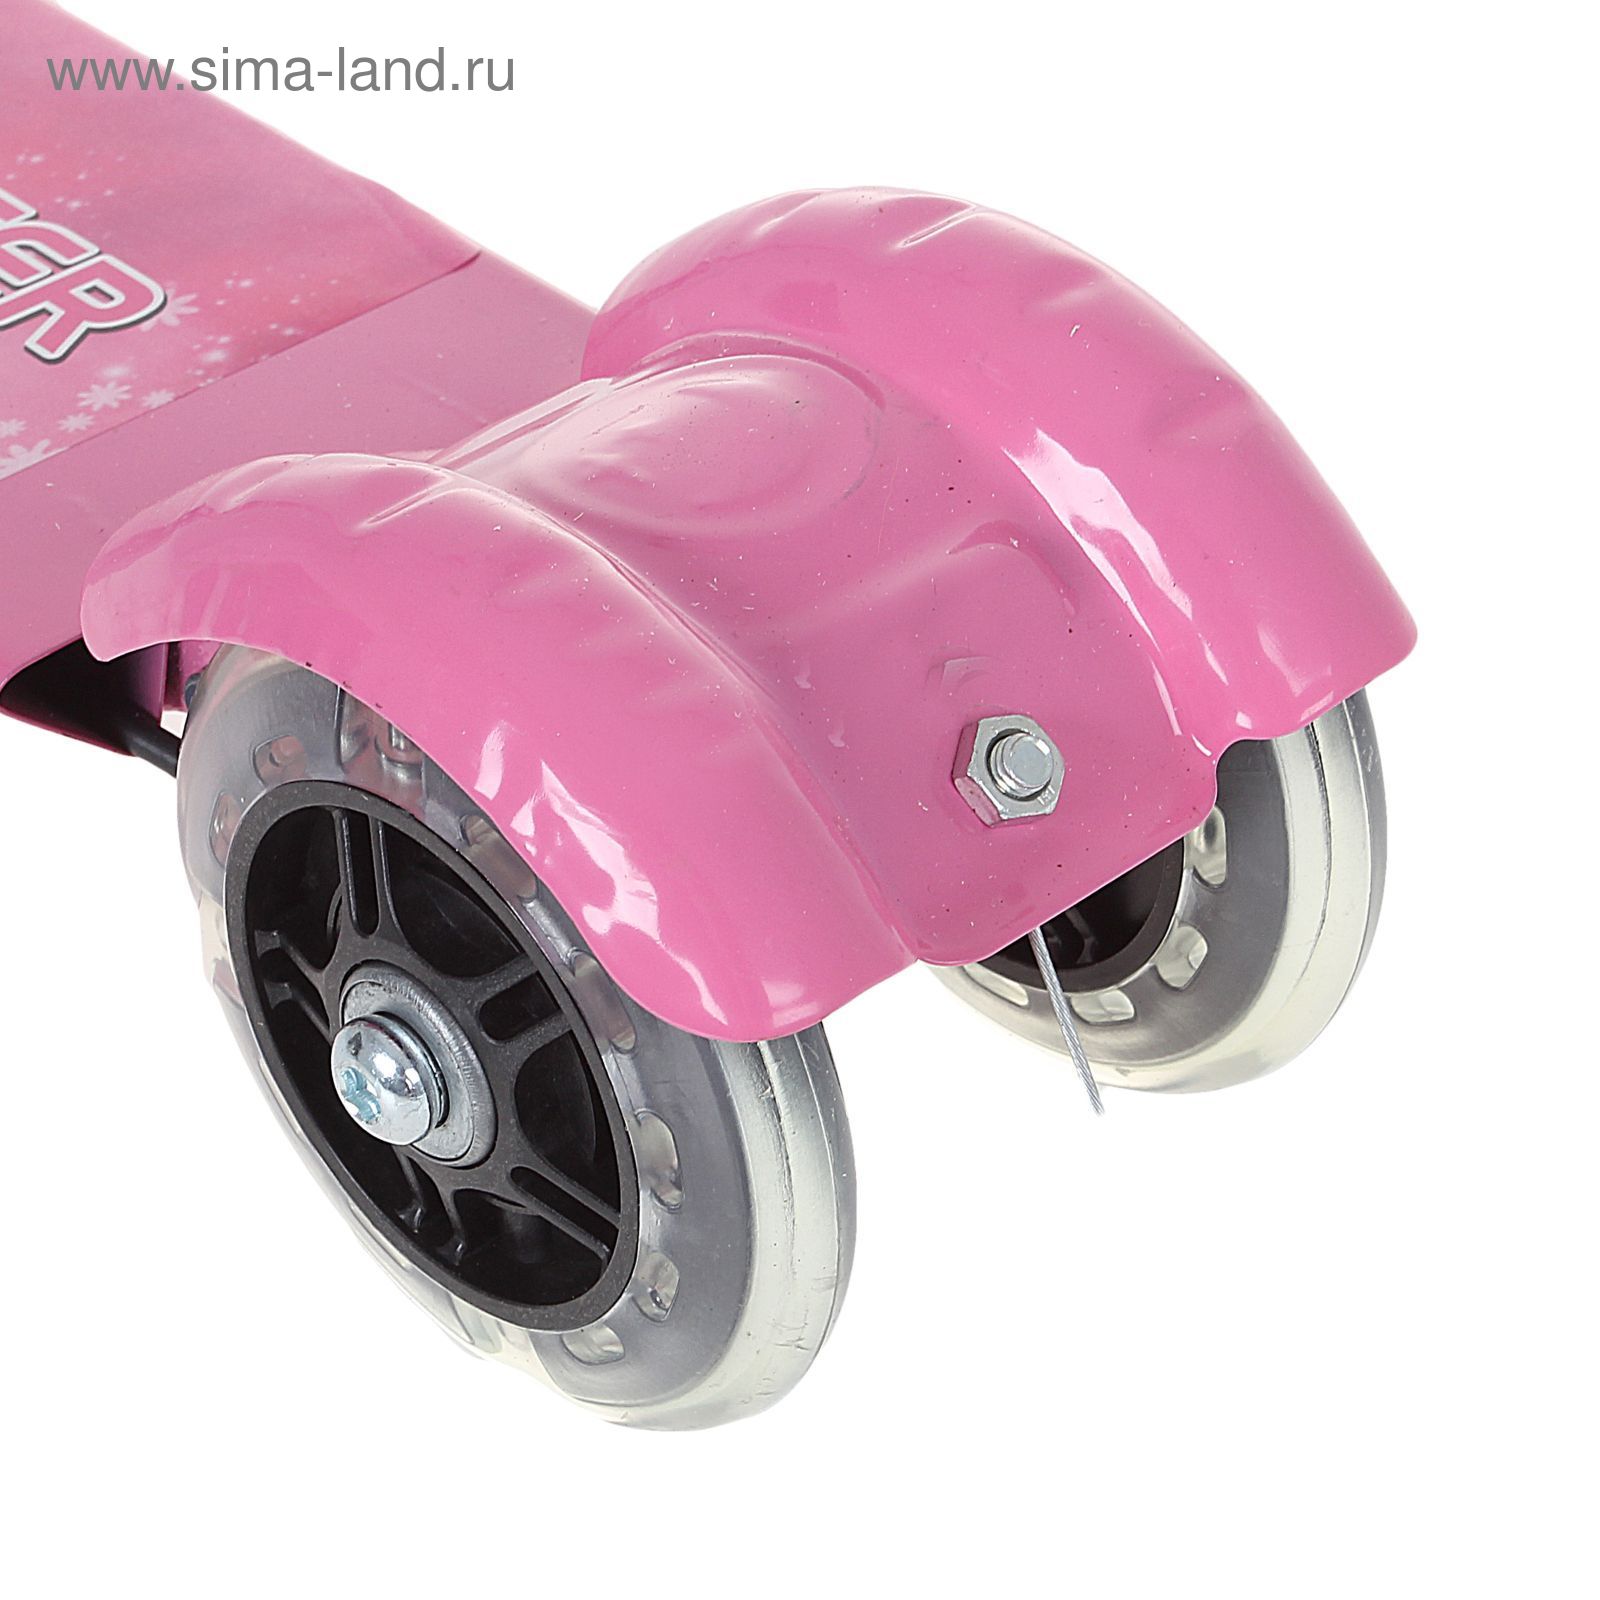 Самокат стальной 508PS с ручным тормозом, три светящихся колеса PVC, d=100 мм, цвет: розовый, до 40 кг